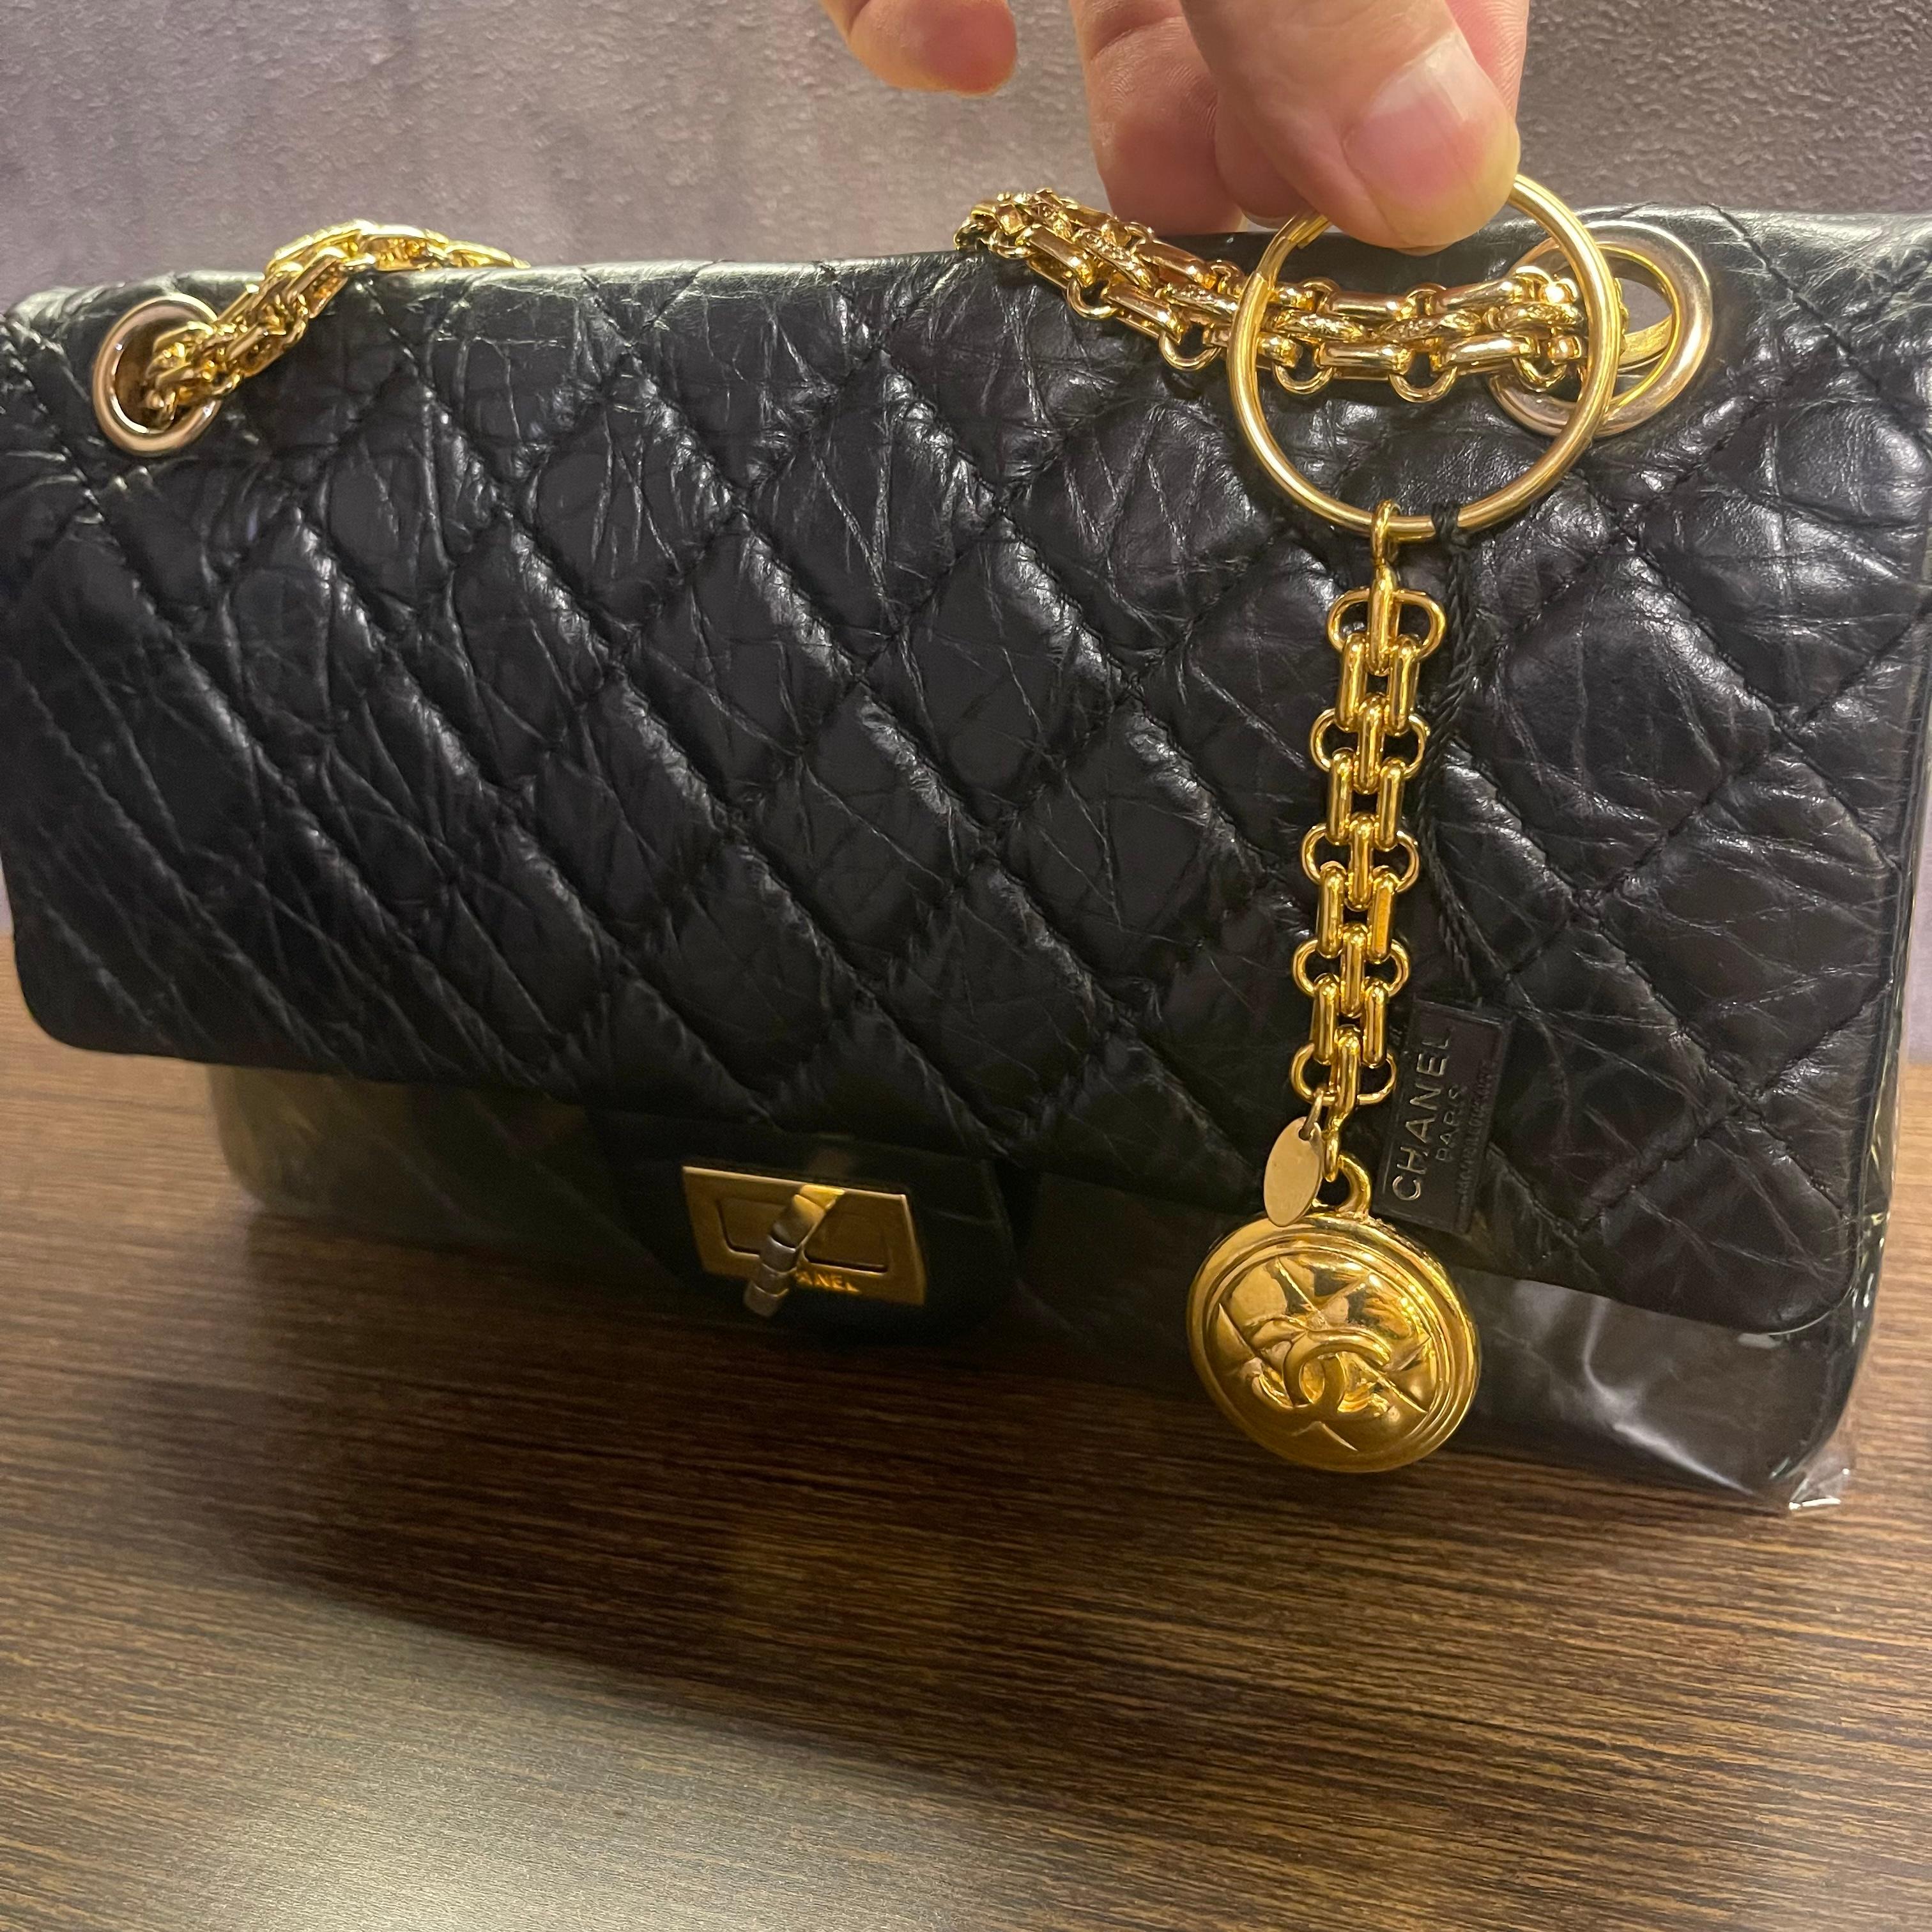 Vintage Chanel Gold Medallion Bag Charm For Sale 1